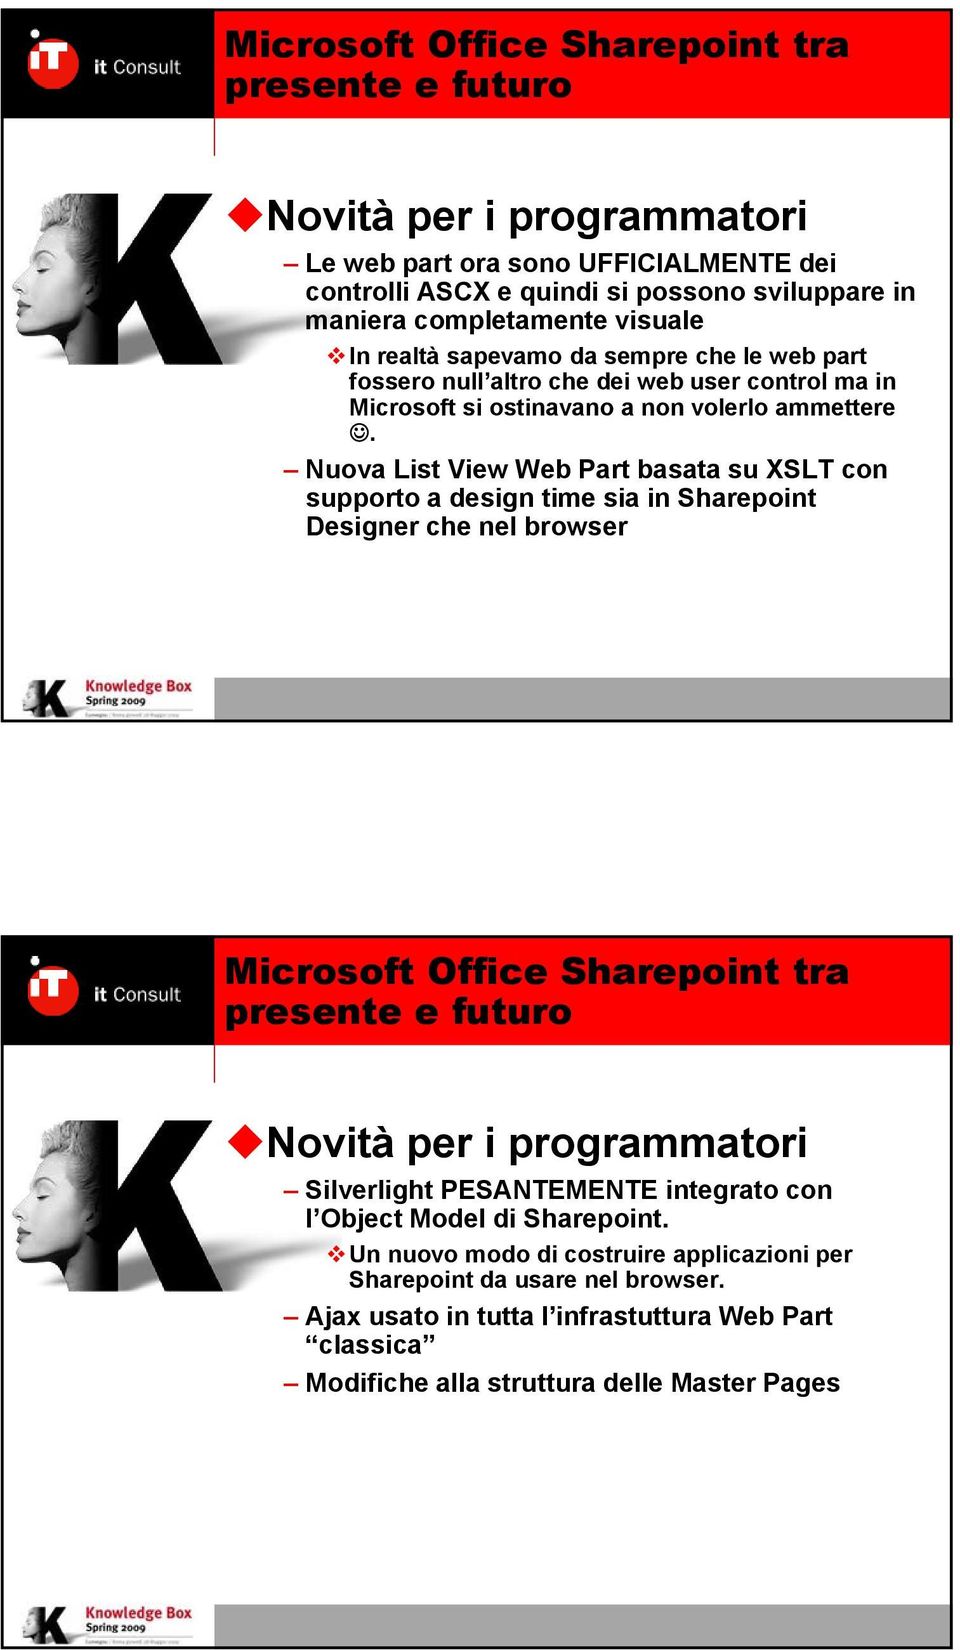 Nuova List View Web Part basata su XSLT con supporto a design time sia in Sharepoint Designer che nel browser Novità per i programmatori Silverlight PESANTEMENTE